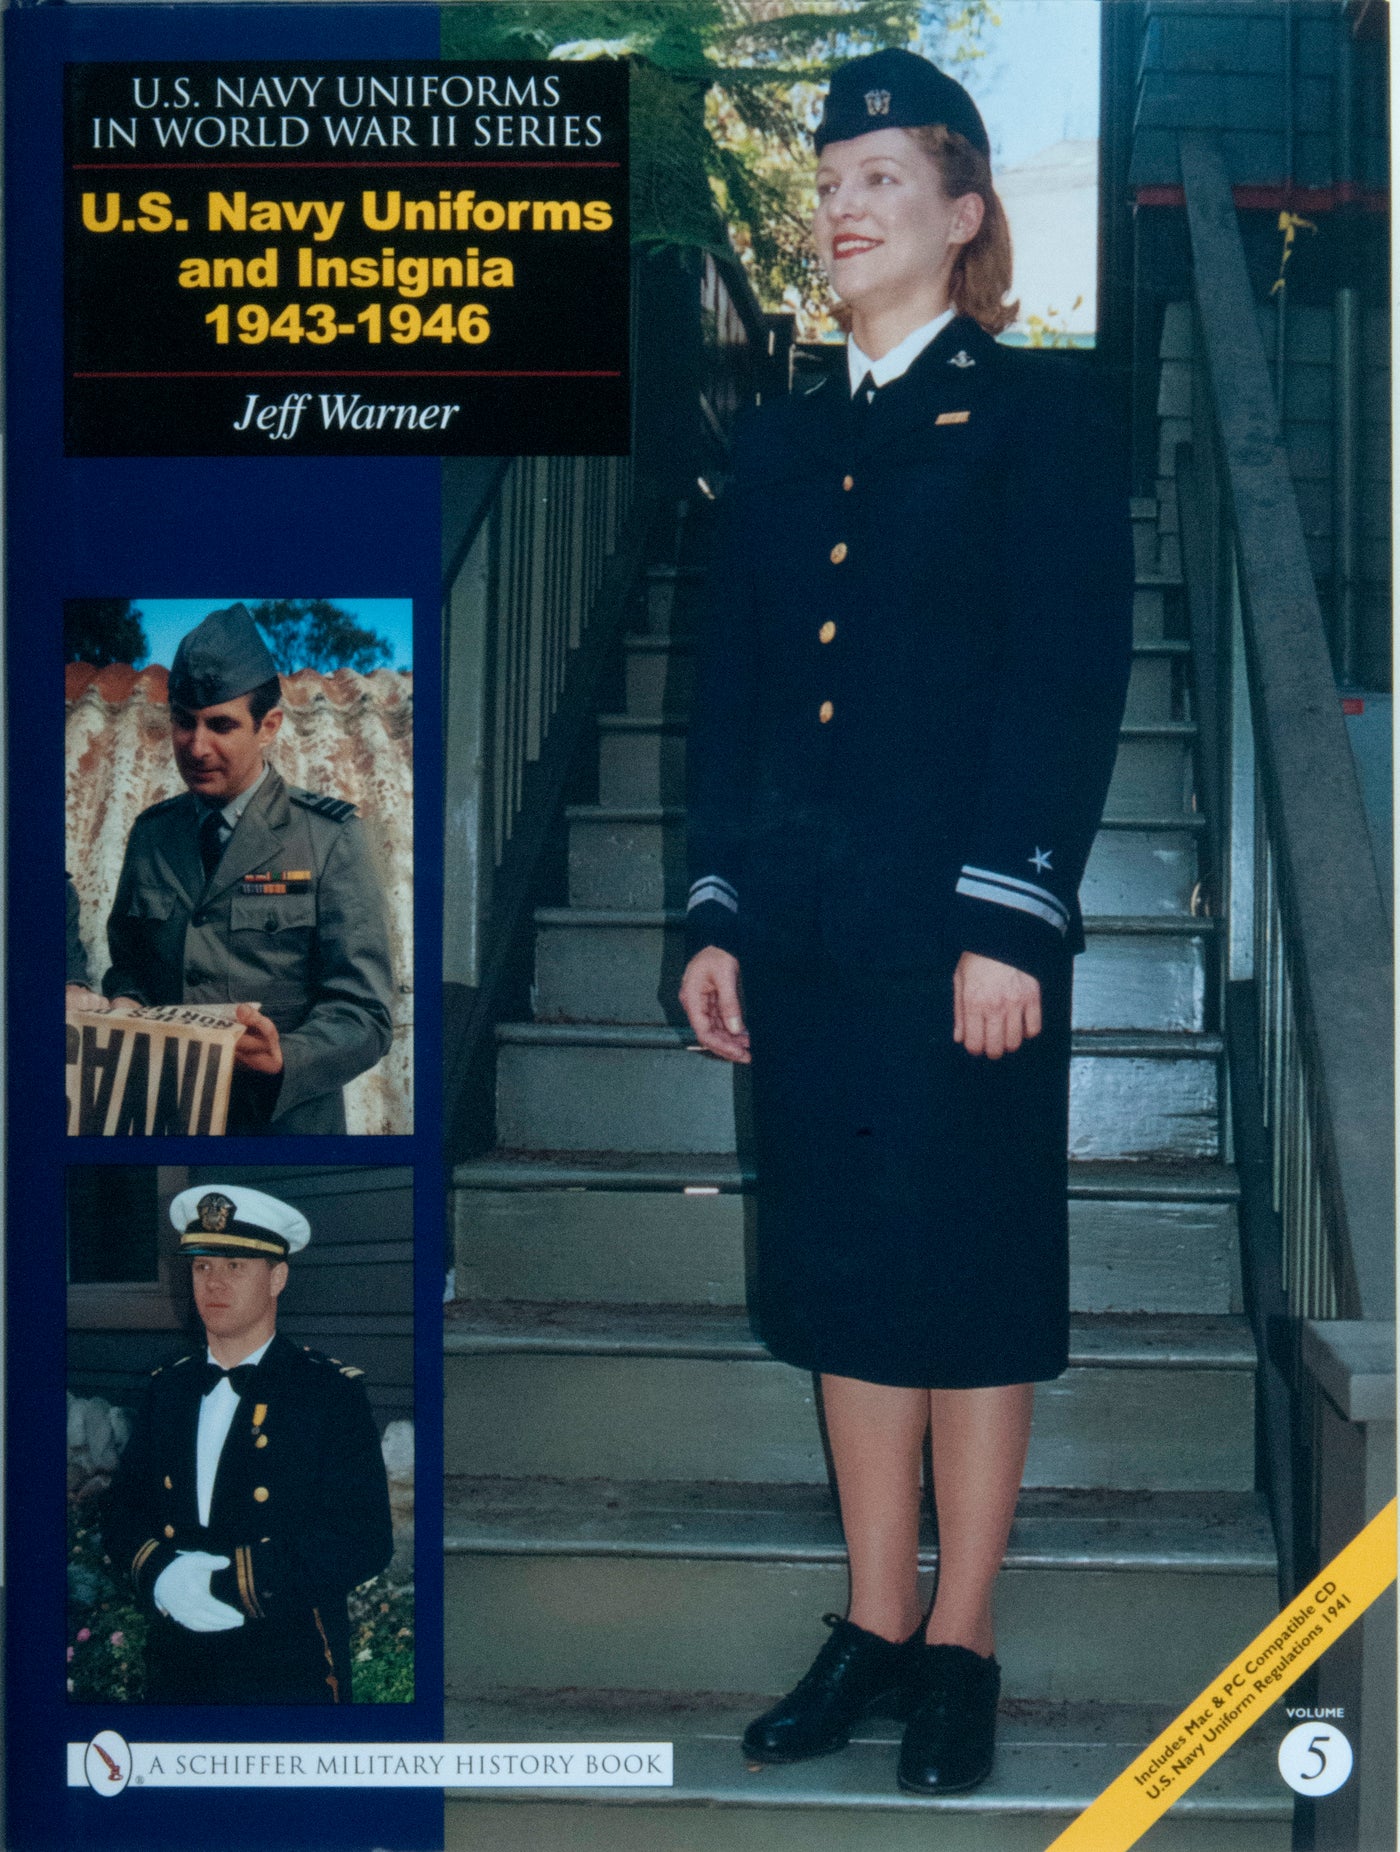 U.S. Navy Uniforms in World War II Series: 1943-1946 Vol. 5